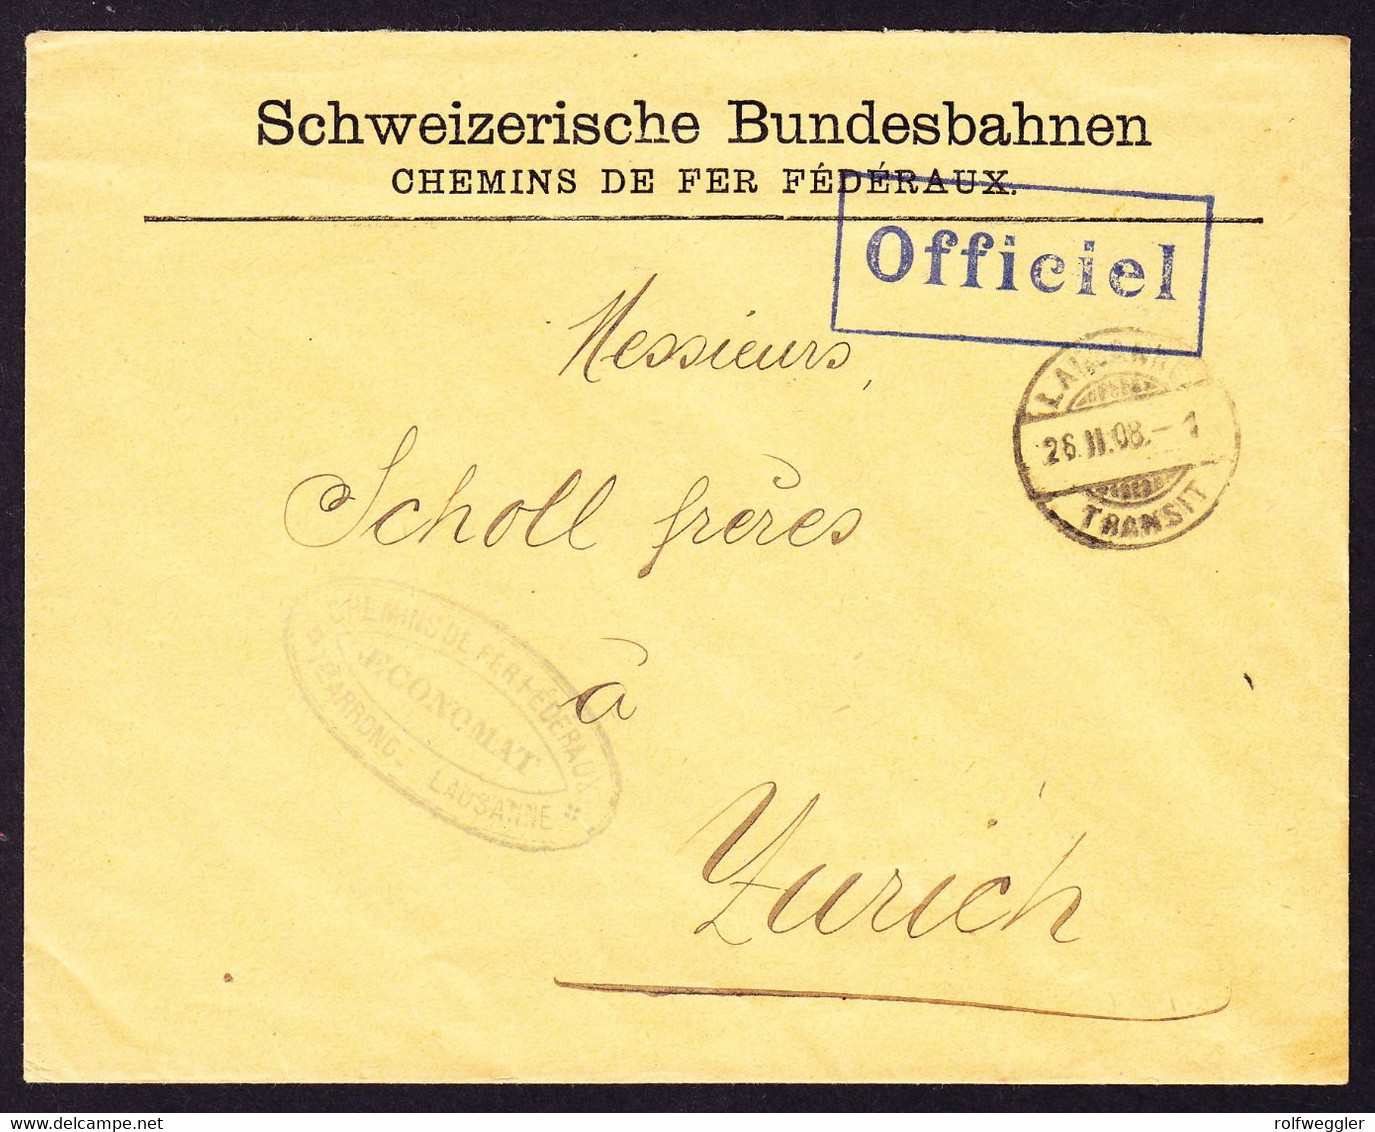 1908 Offizieller Brief Schweizerische Bundesbahnen. Aus Lausanne Nach Zürich. Blauer Stempel "Officiel" - Bahnwesen